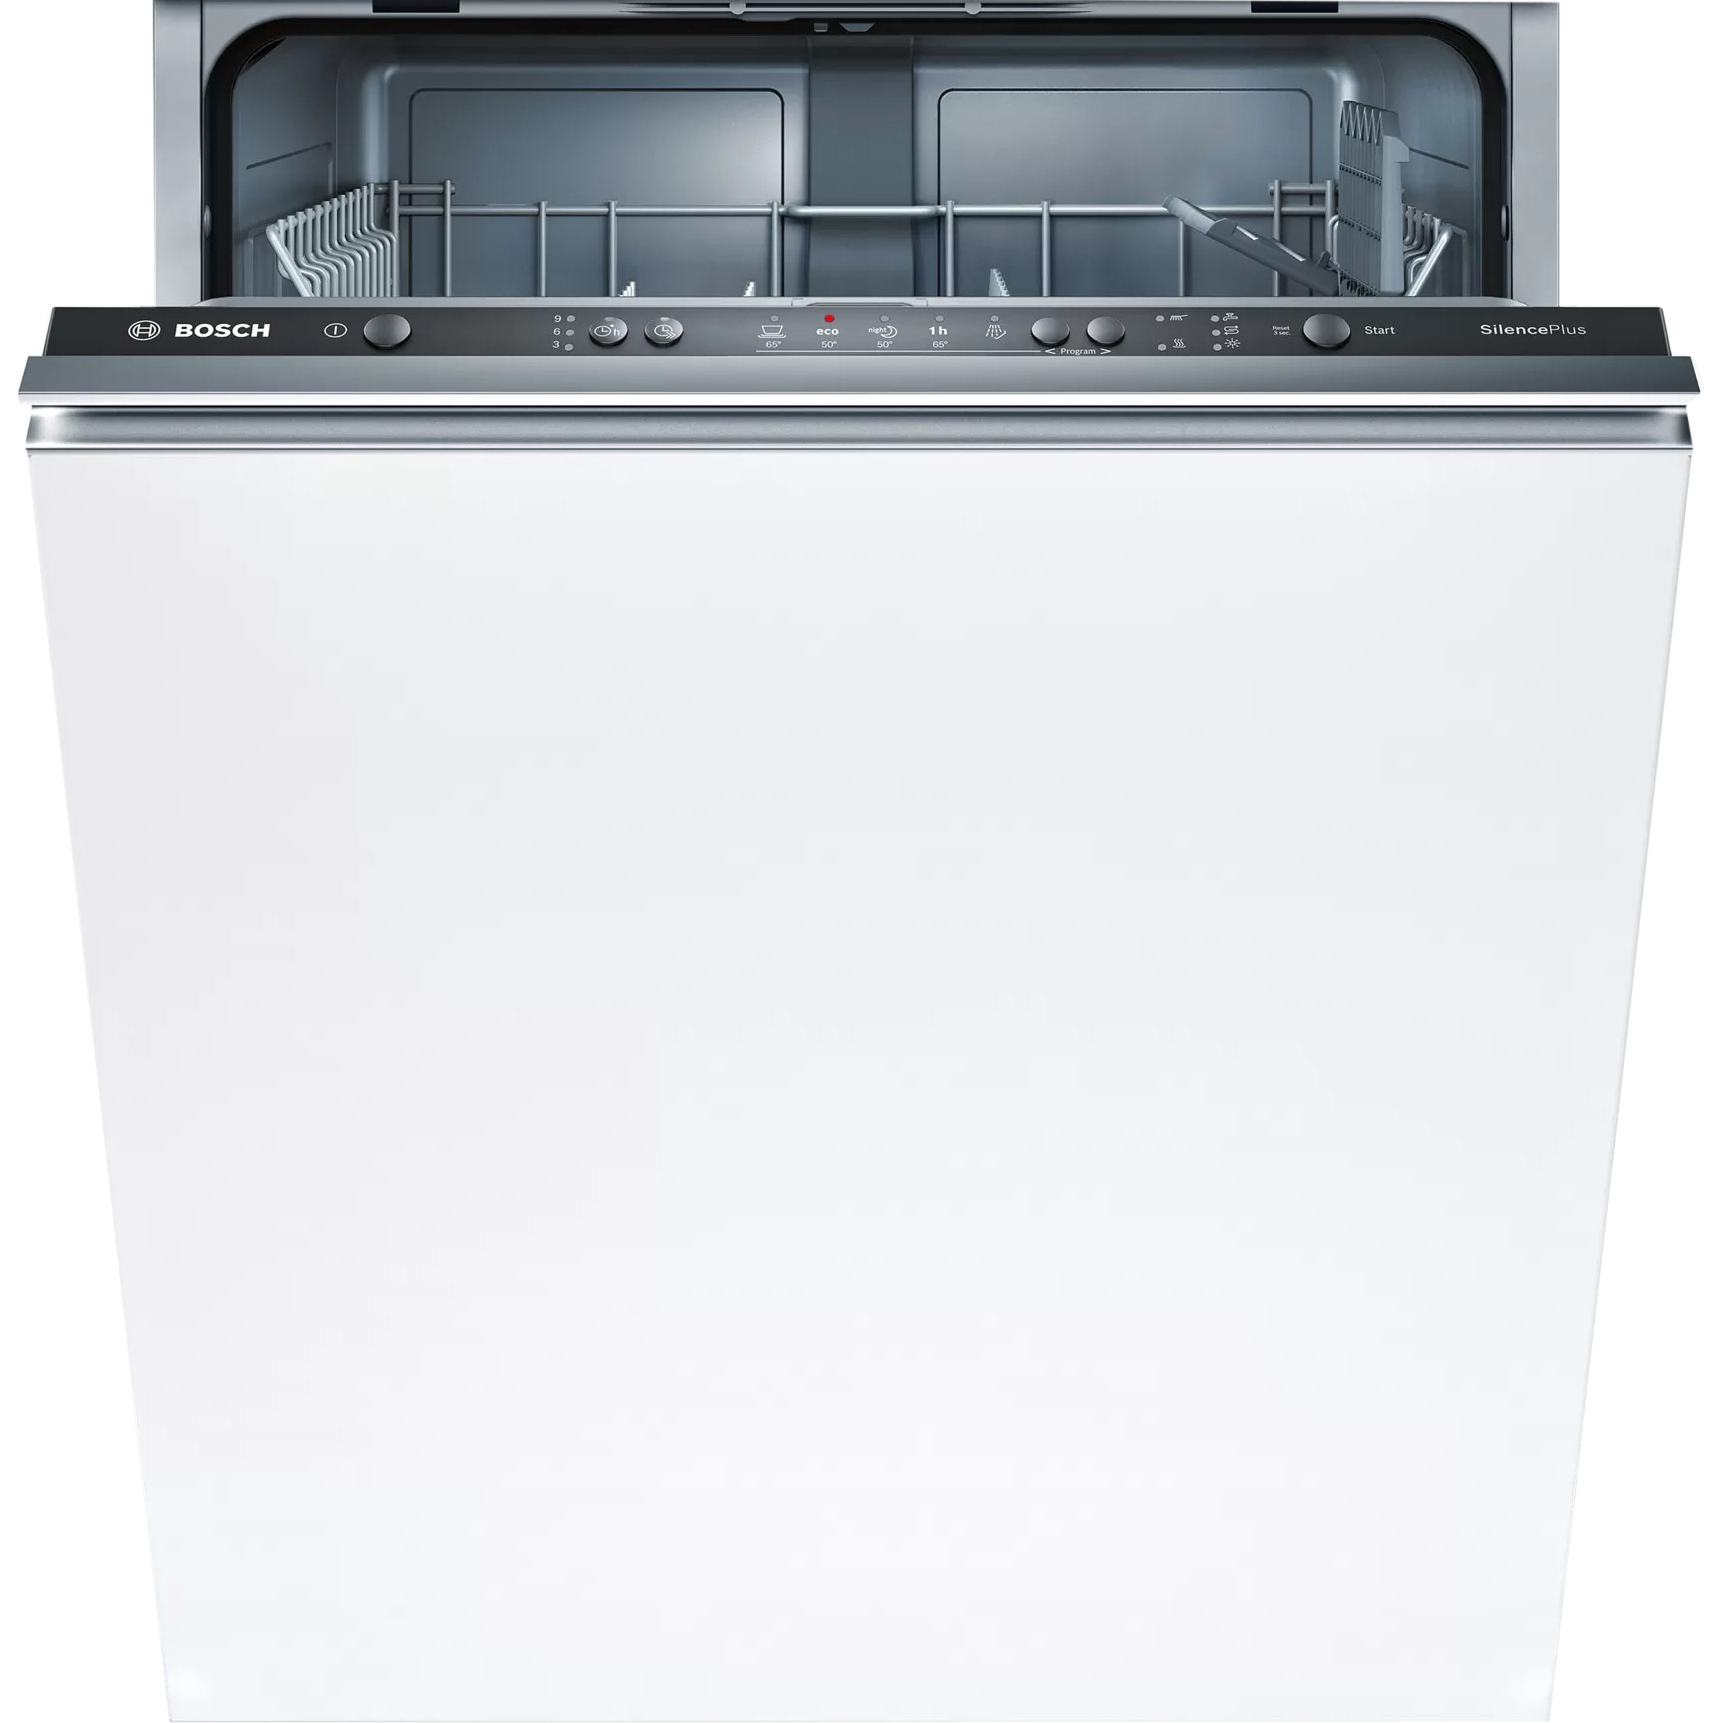 Встраиваемая посудомоечная машина Bosch SMV25AX01R, цвет белый - фото 1